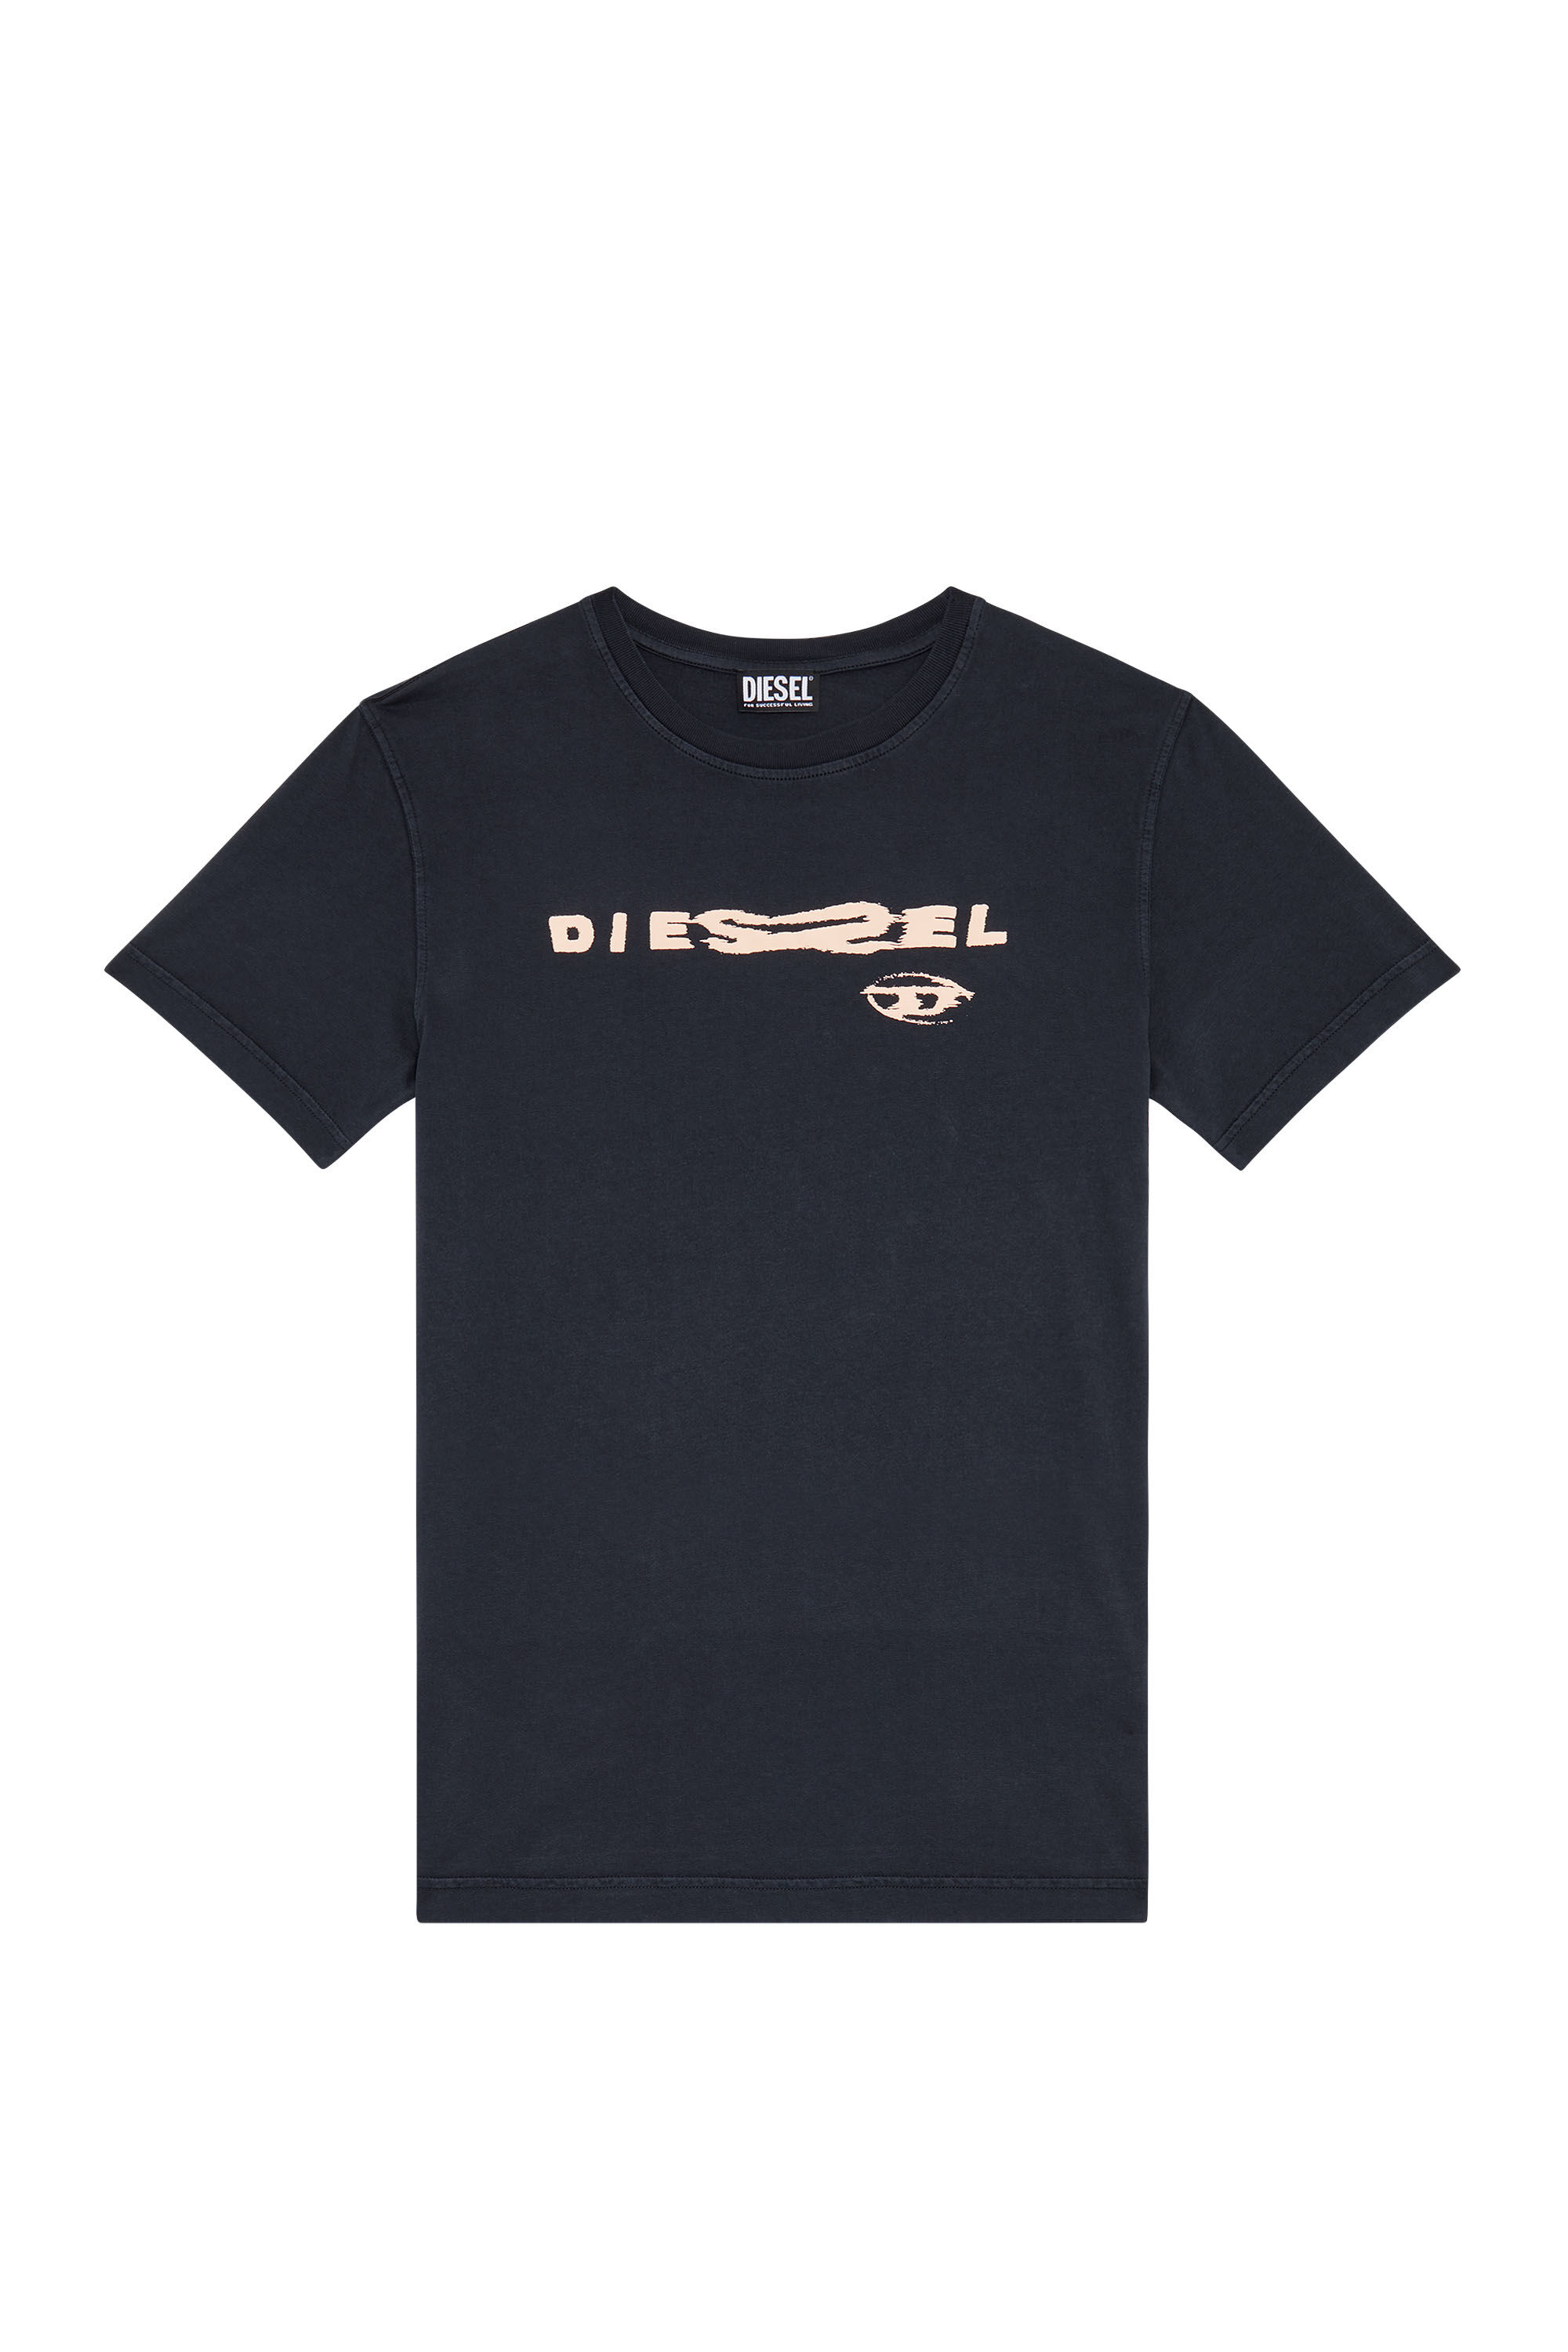 Diesel - T-DANNY, Black - Image 2